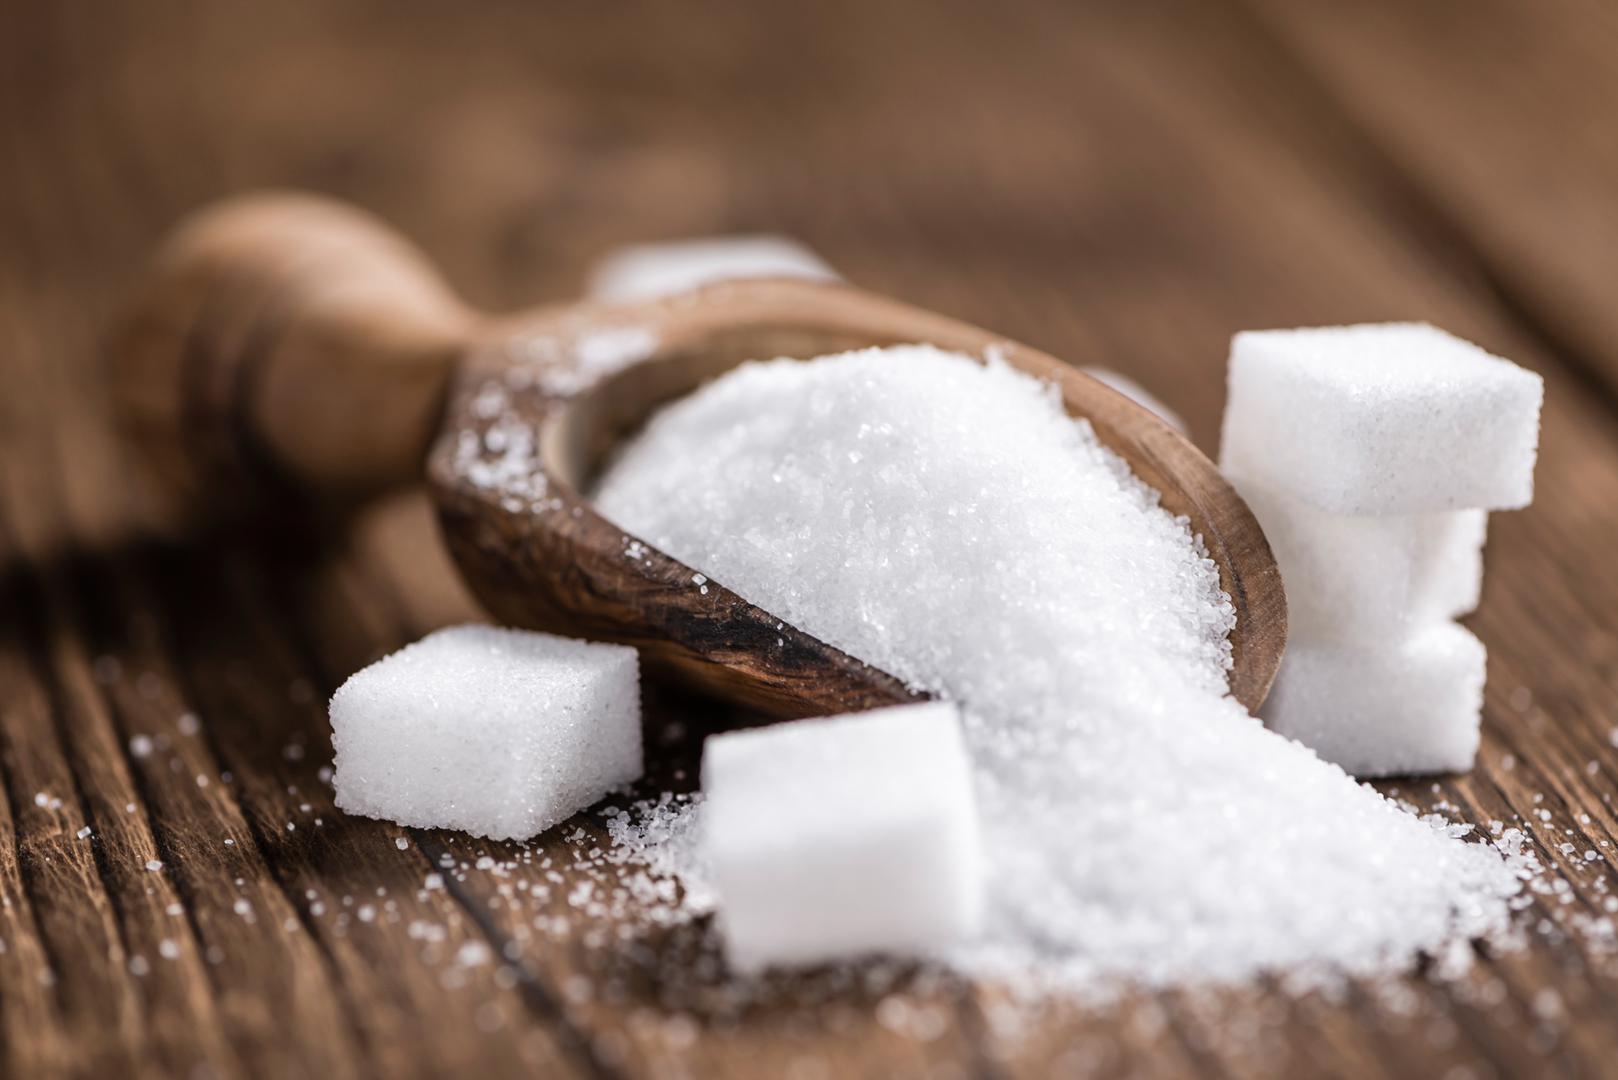 Šećer je jedan od najvećih neprijatelja organizma, a često ga konzumiramo da toga nismo ni svjesni. Najopasniji su skriveni šećeri koji se nalaze u hrani koju svakodnevno jedemo poput prerađenih žitarica, gaziranih pića, umaka, voćnih jogurta i sl.